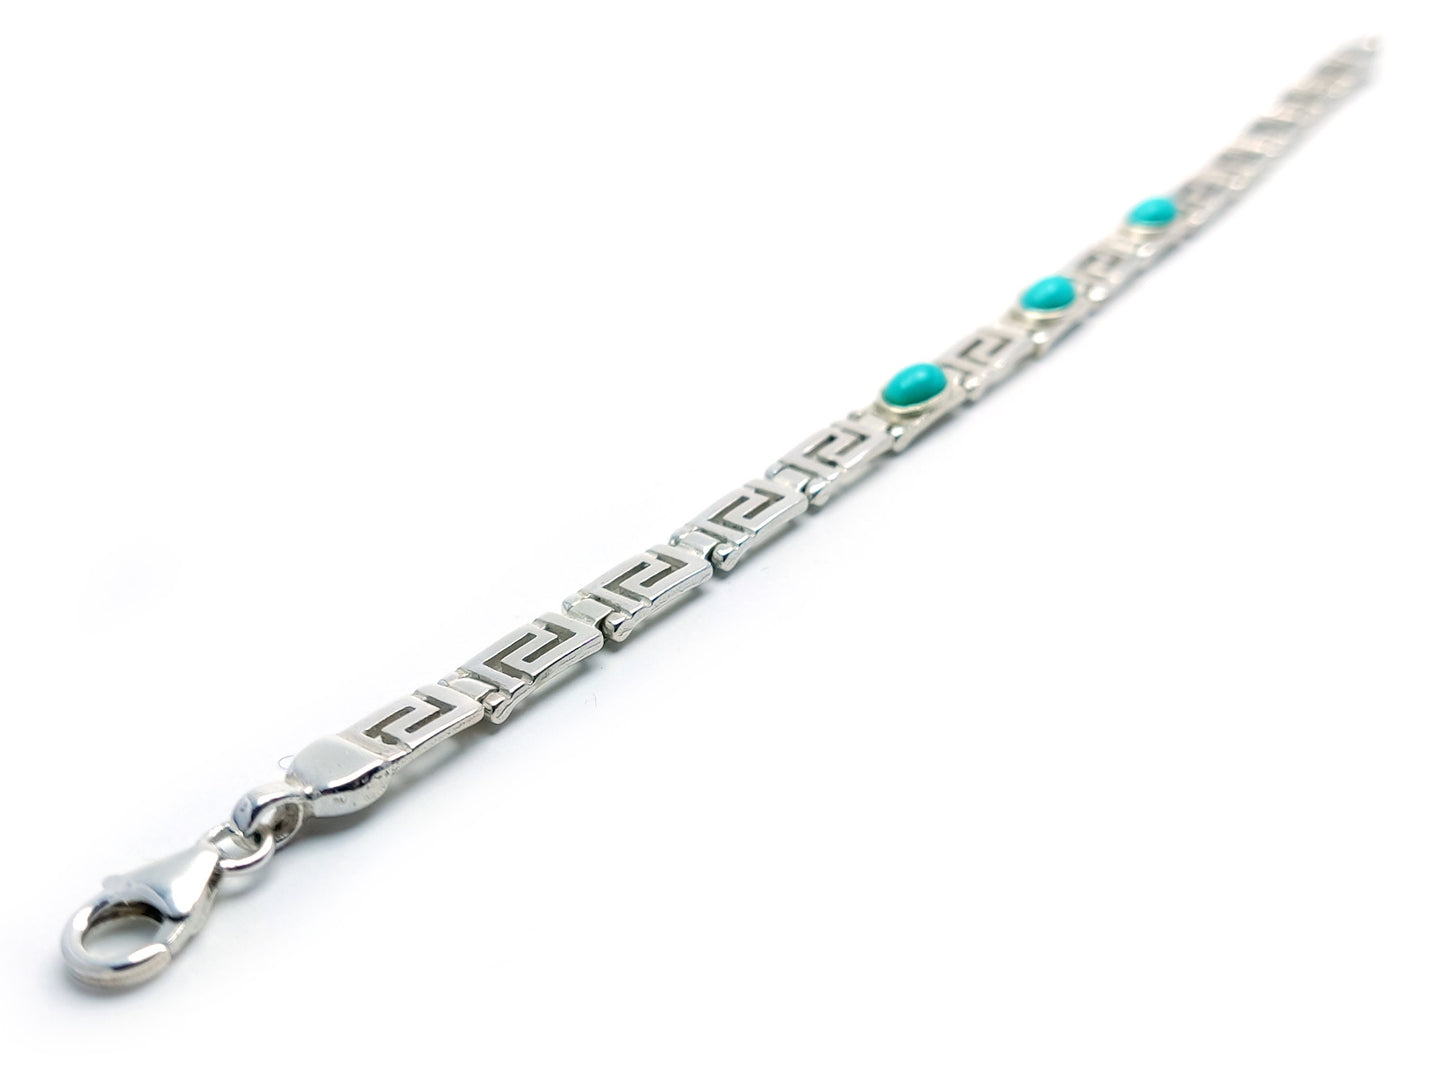 Greek Key Silver Bracelet, Turquoise Blue Stones Jewelry, Griechischer Silber Schmuck Armband, Bijoux De Grece, Meander Bracelets Greece